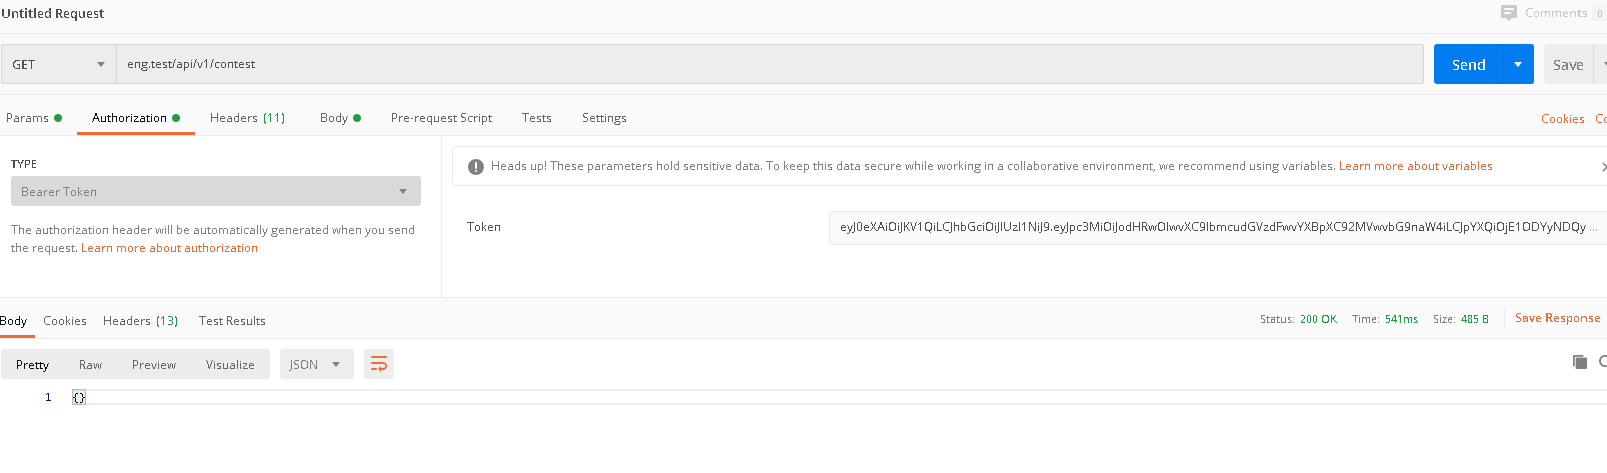 通过auth登录之后,请求必须经过auth中间件才能获取到当前登录的用户信息吗?